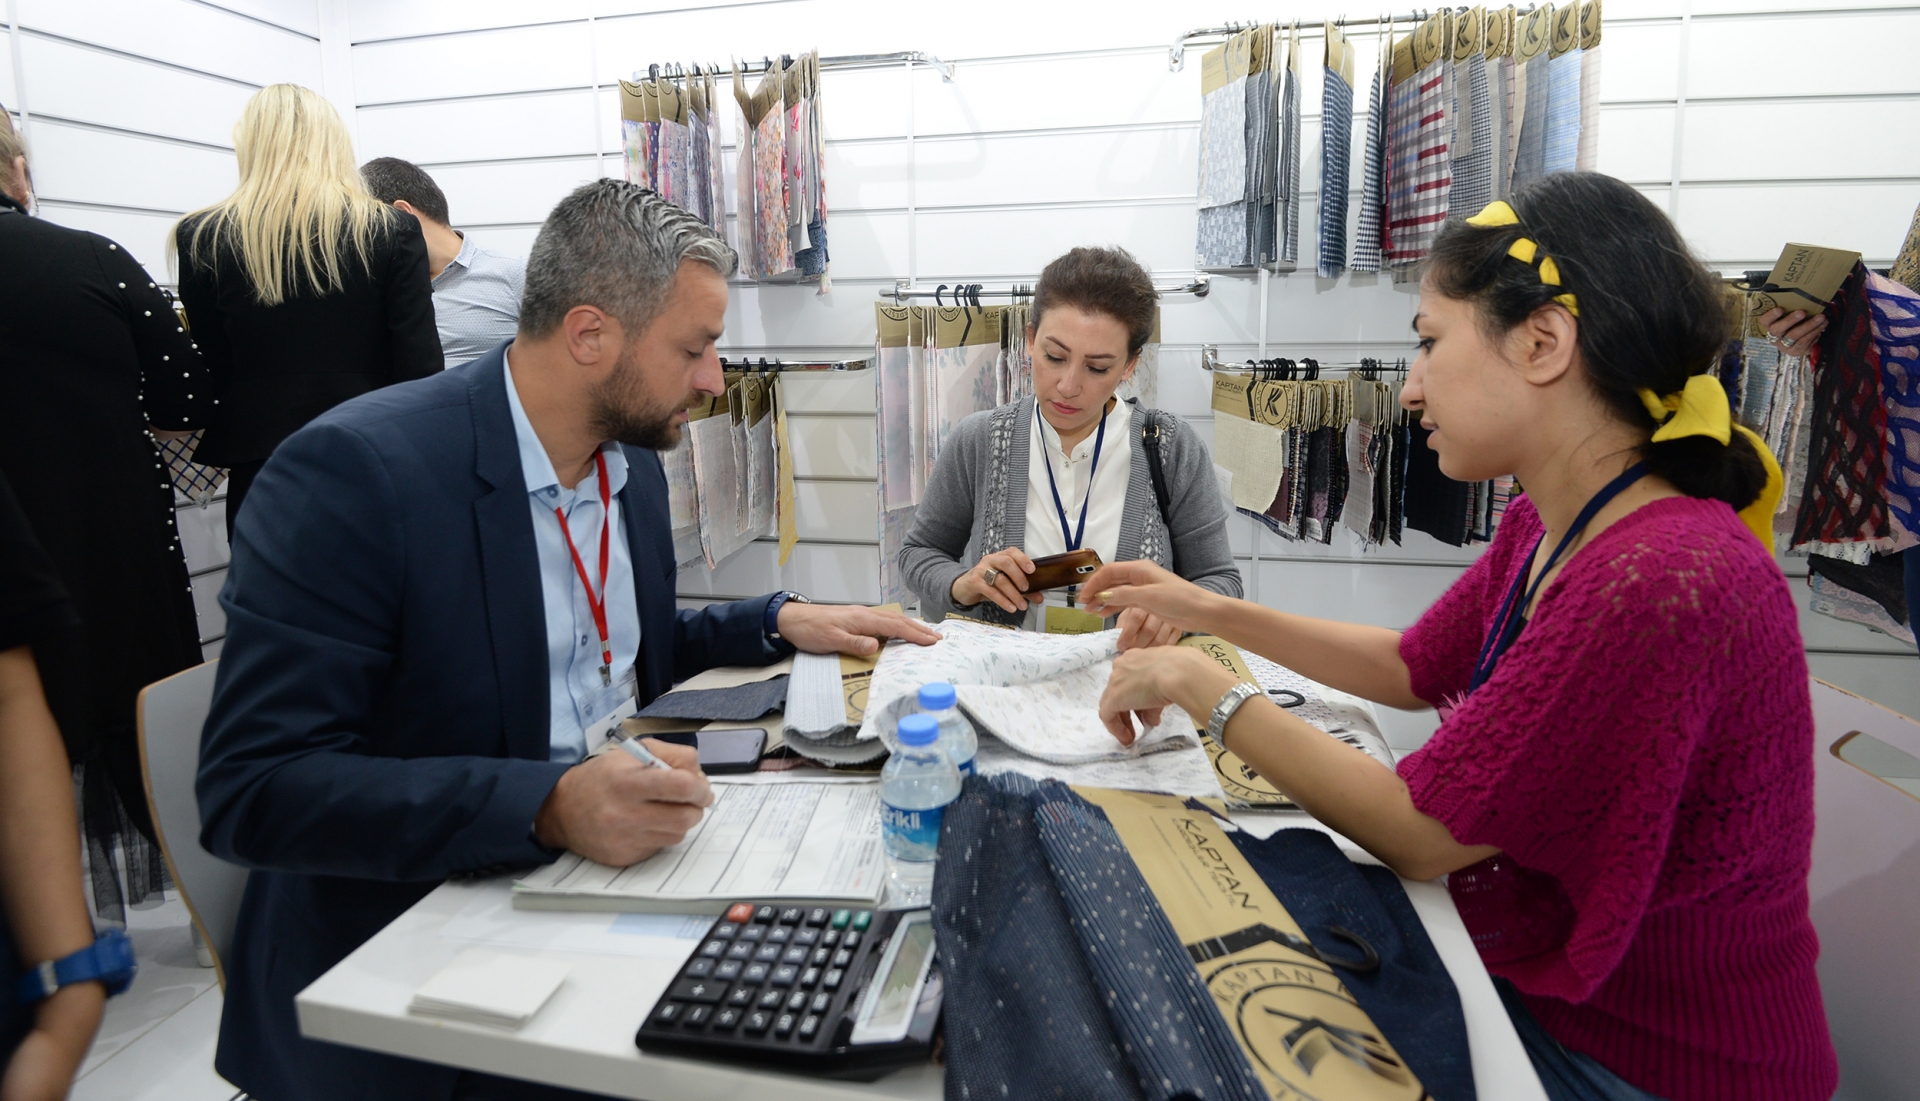 Bursa Ticaret ve Sanayi Odası öncülüğünde bu yıl ikincisi düzenlenen Bursa Textile Show Fuarı sona erdi. 40’a yakın ülkeden 400 yabancı iş profesyonelinin ziyaret ettiği organizasyonda Bursalı firmalar 5 bine yakın iş görüşmesi gerçekleştirdi.